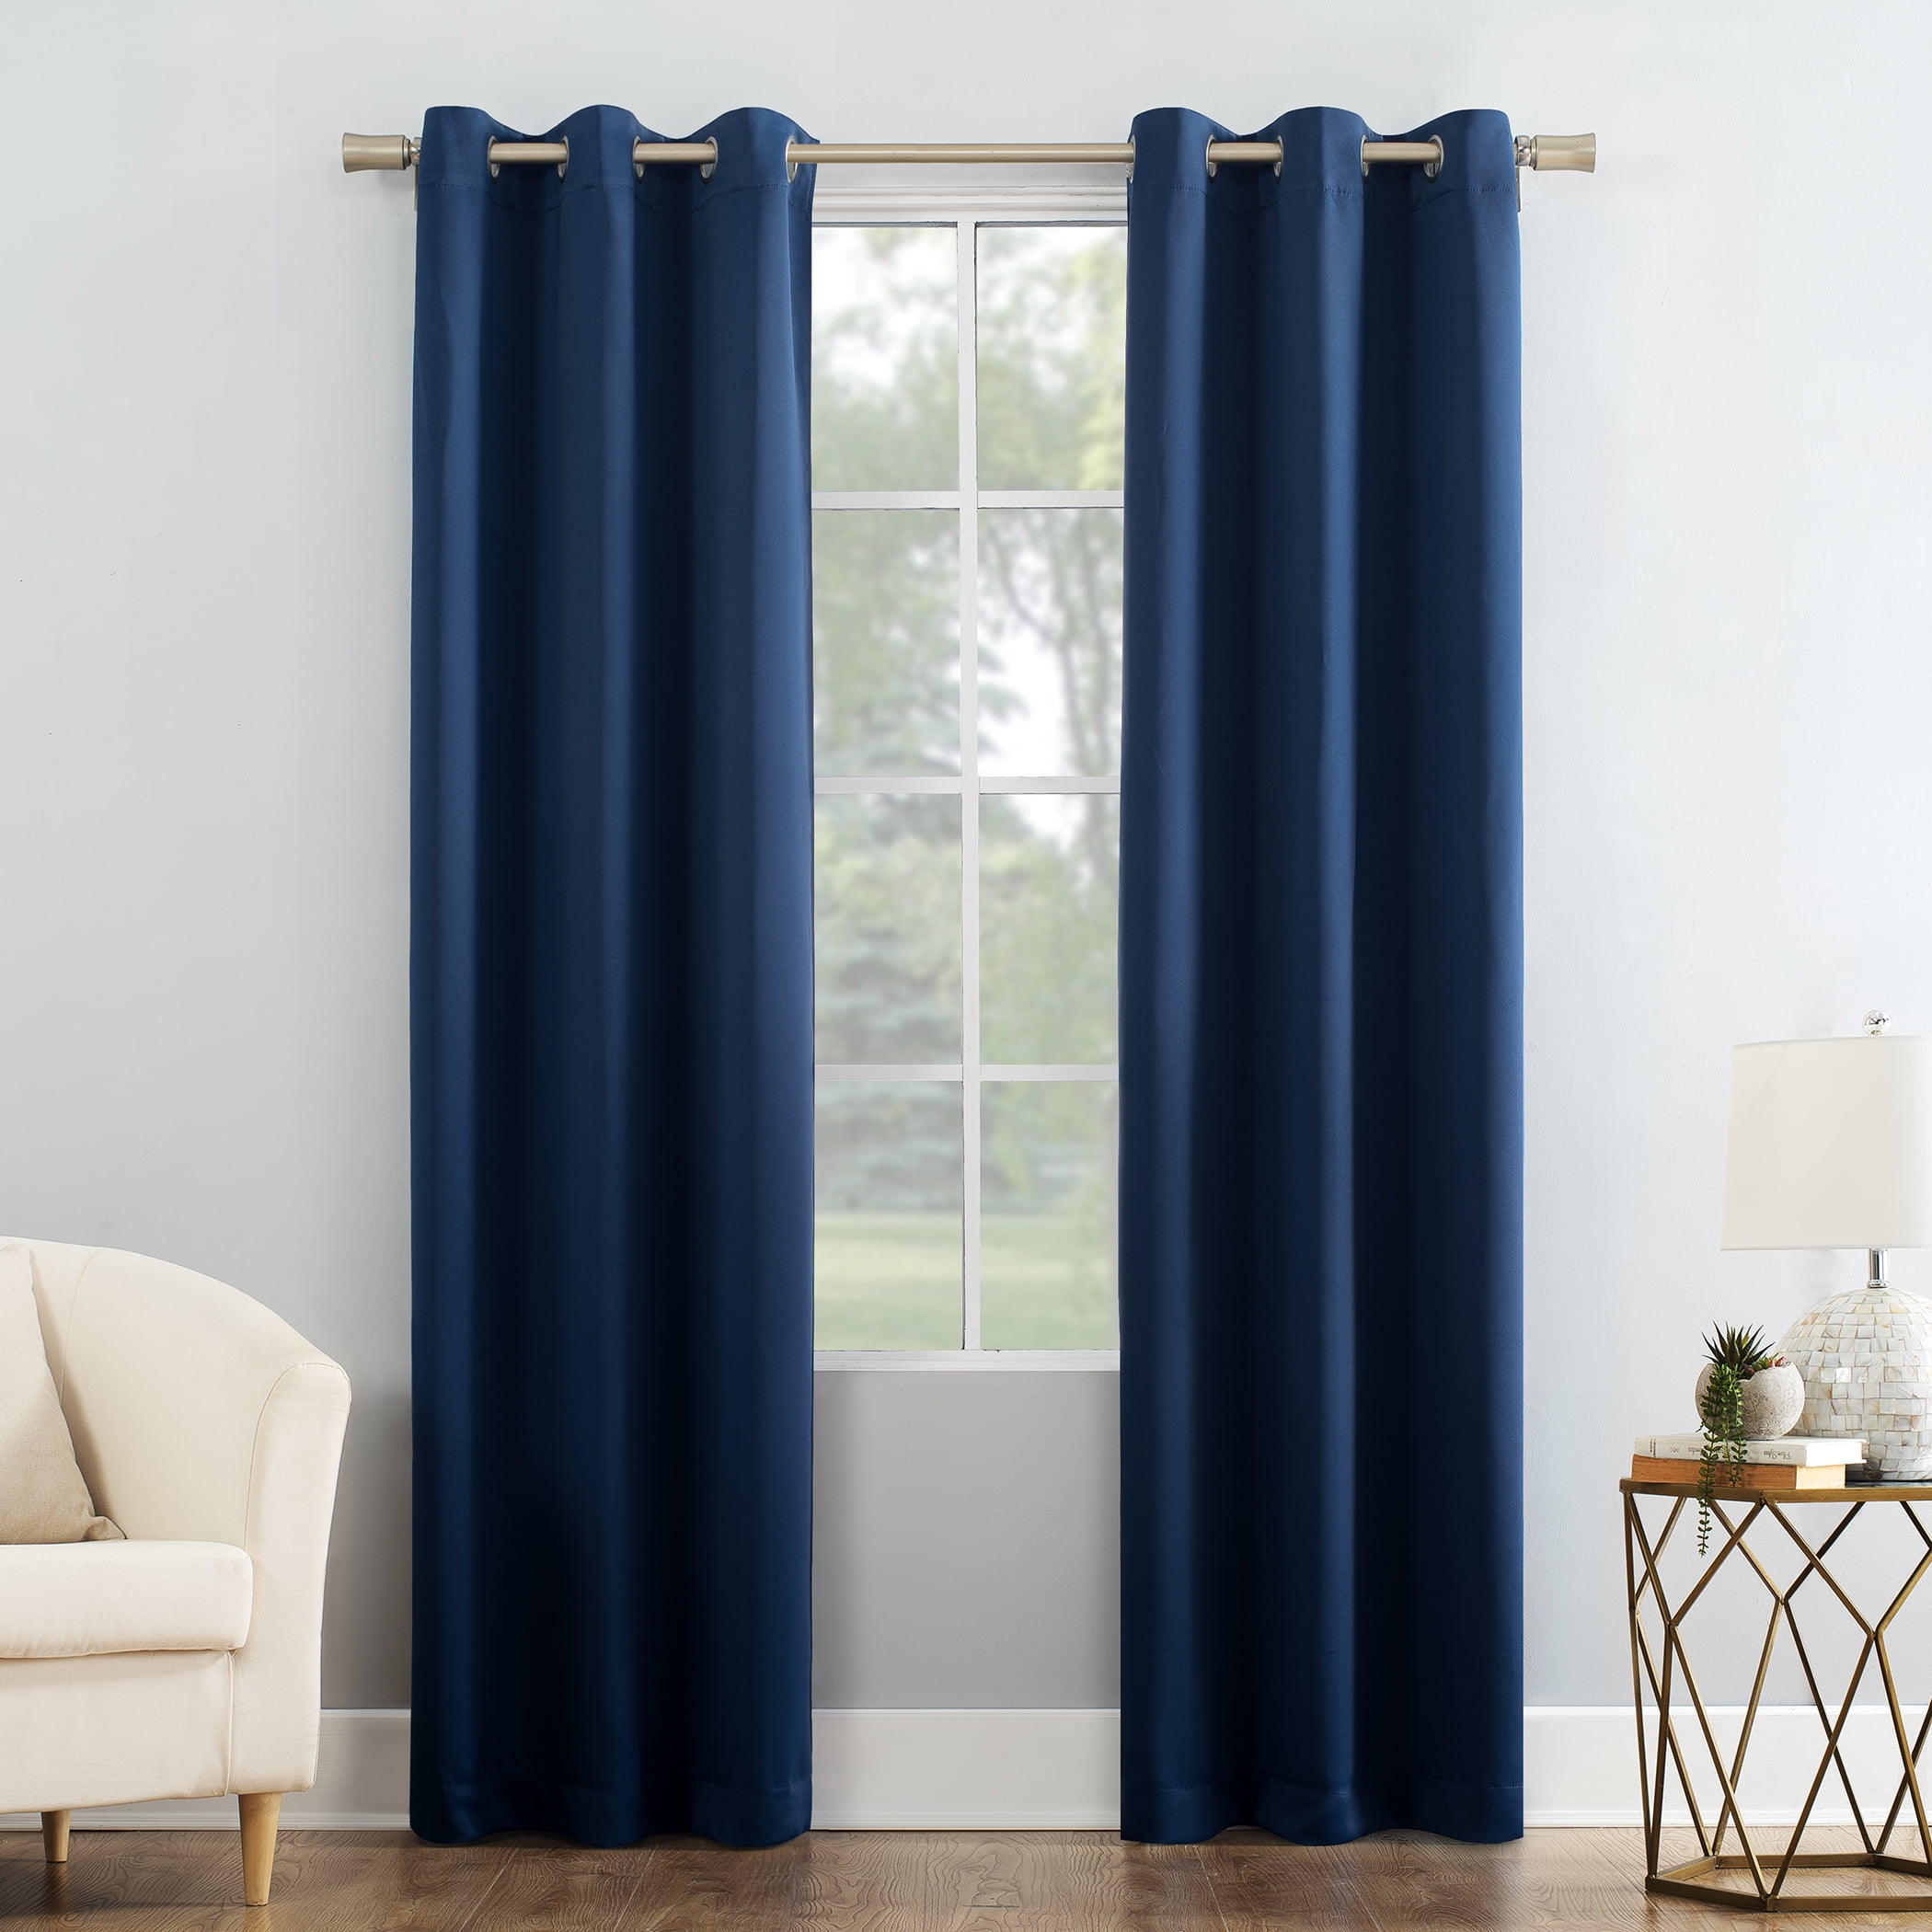 Mainstays Blackout Energy Efficient Grommet Single Curtain Panel, 40"x84", Blue